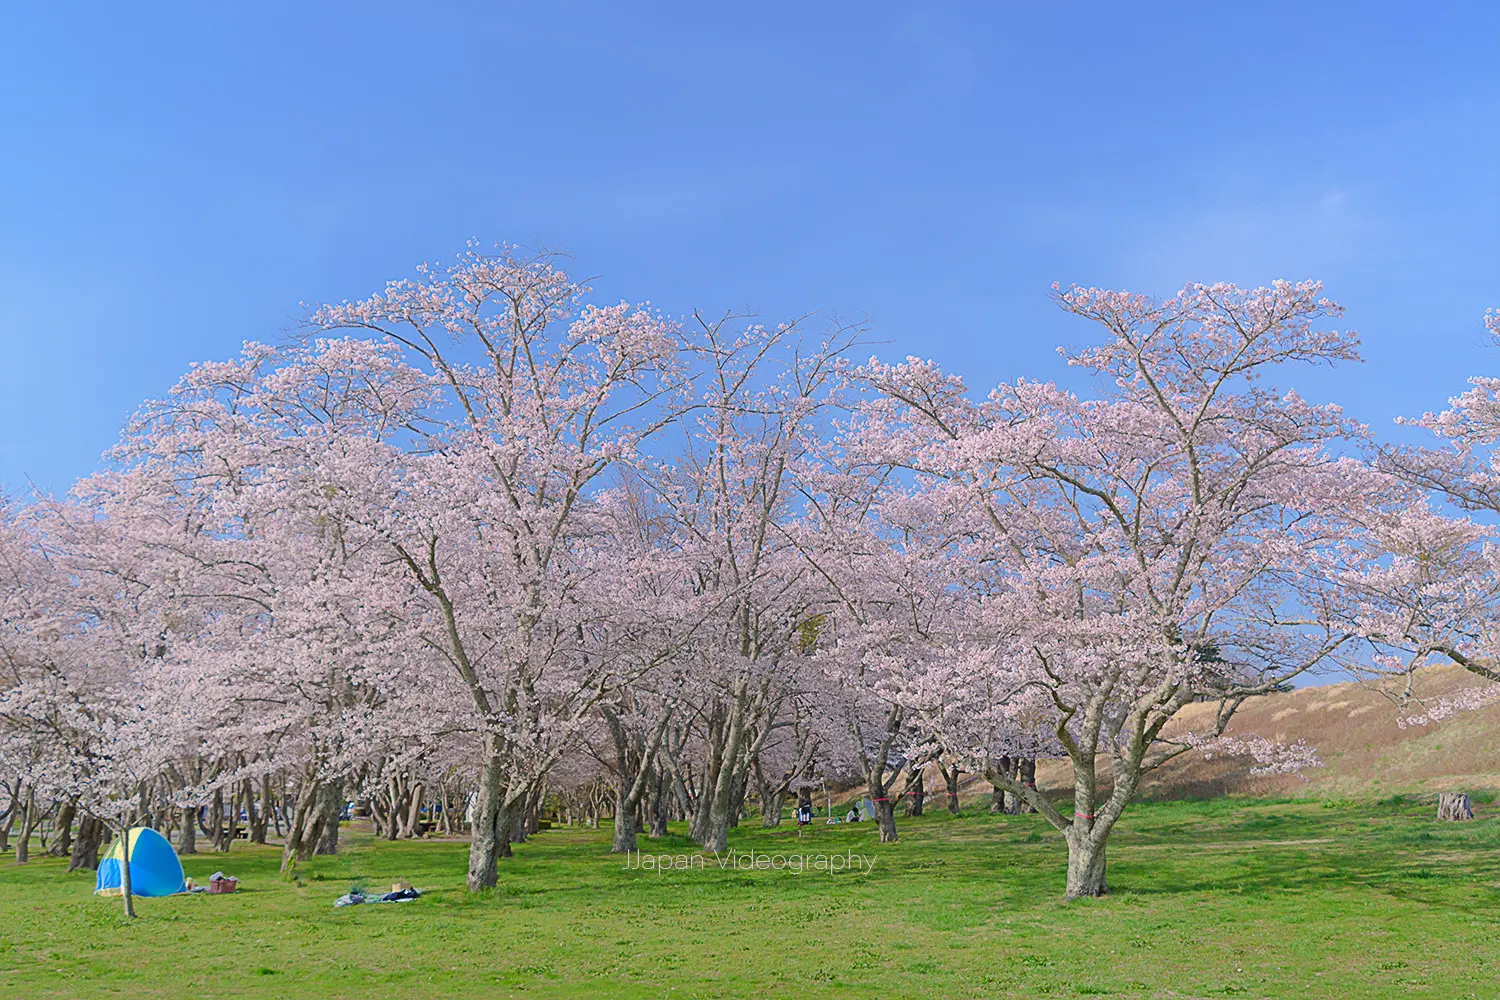 モリリン加瀬沼公園の桜